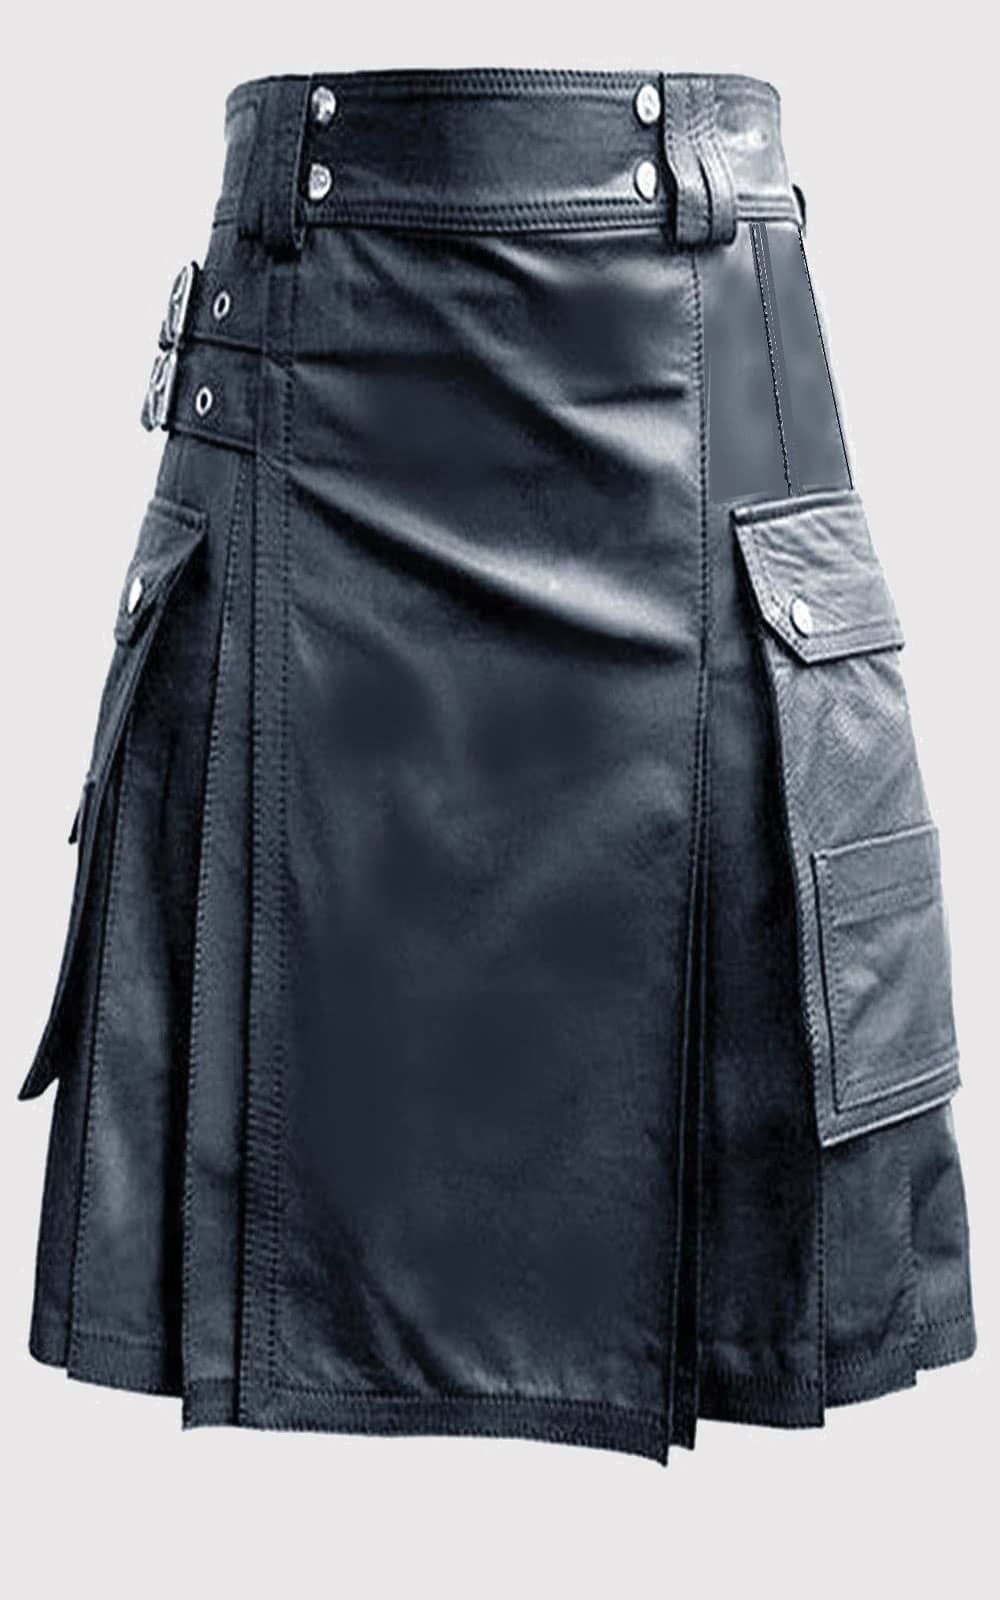 Handmade Real Leather Kilt